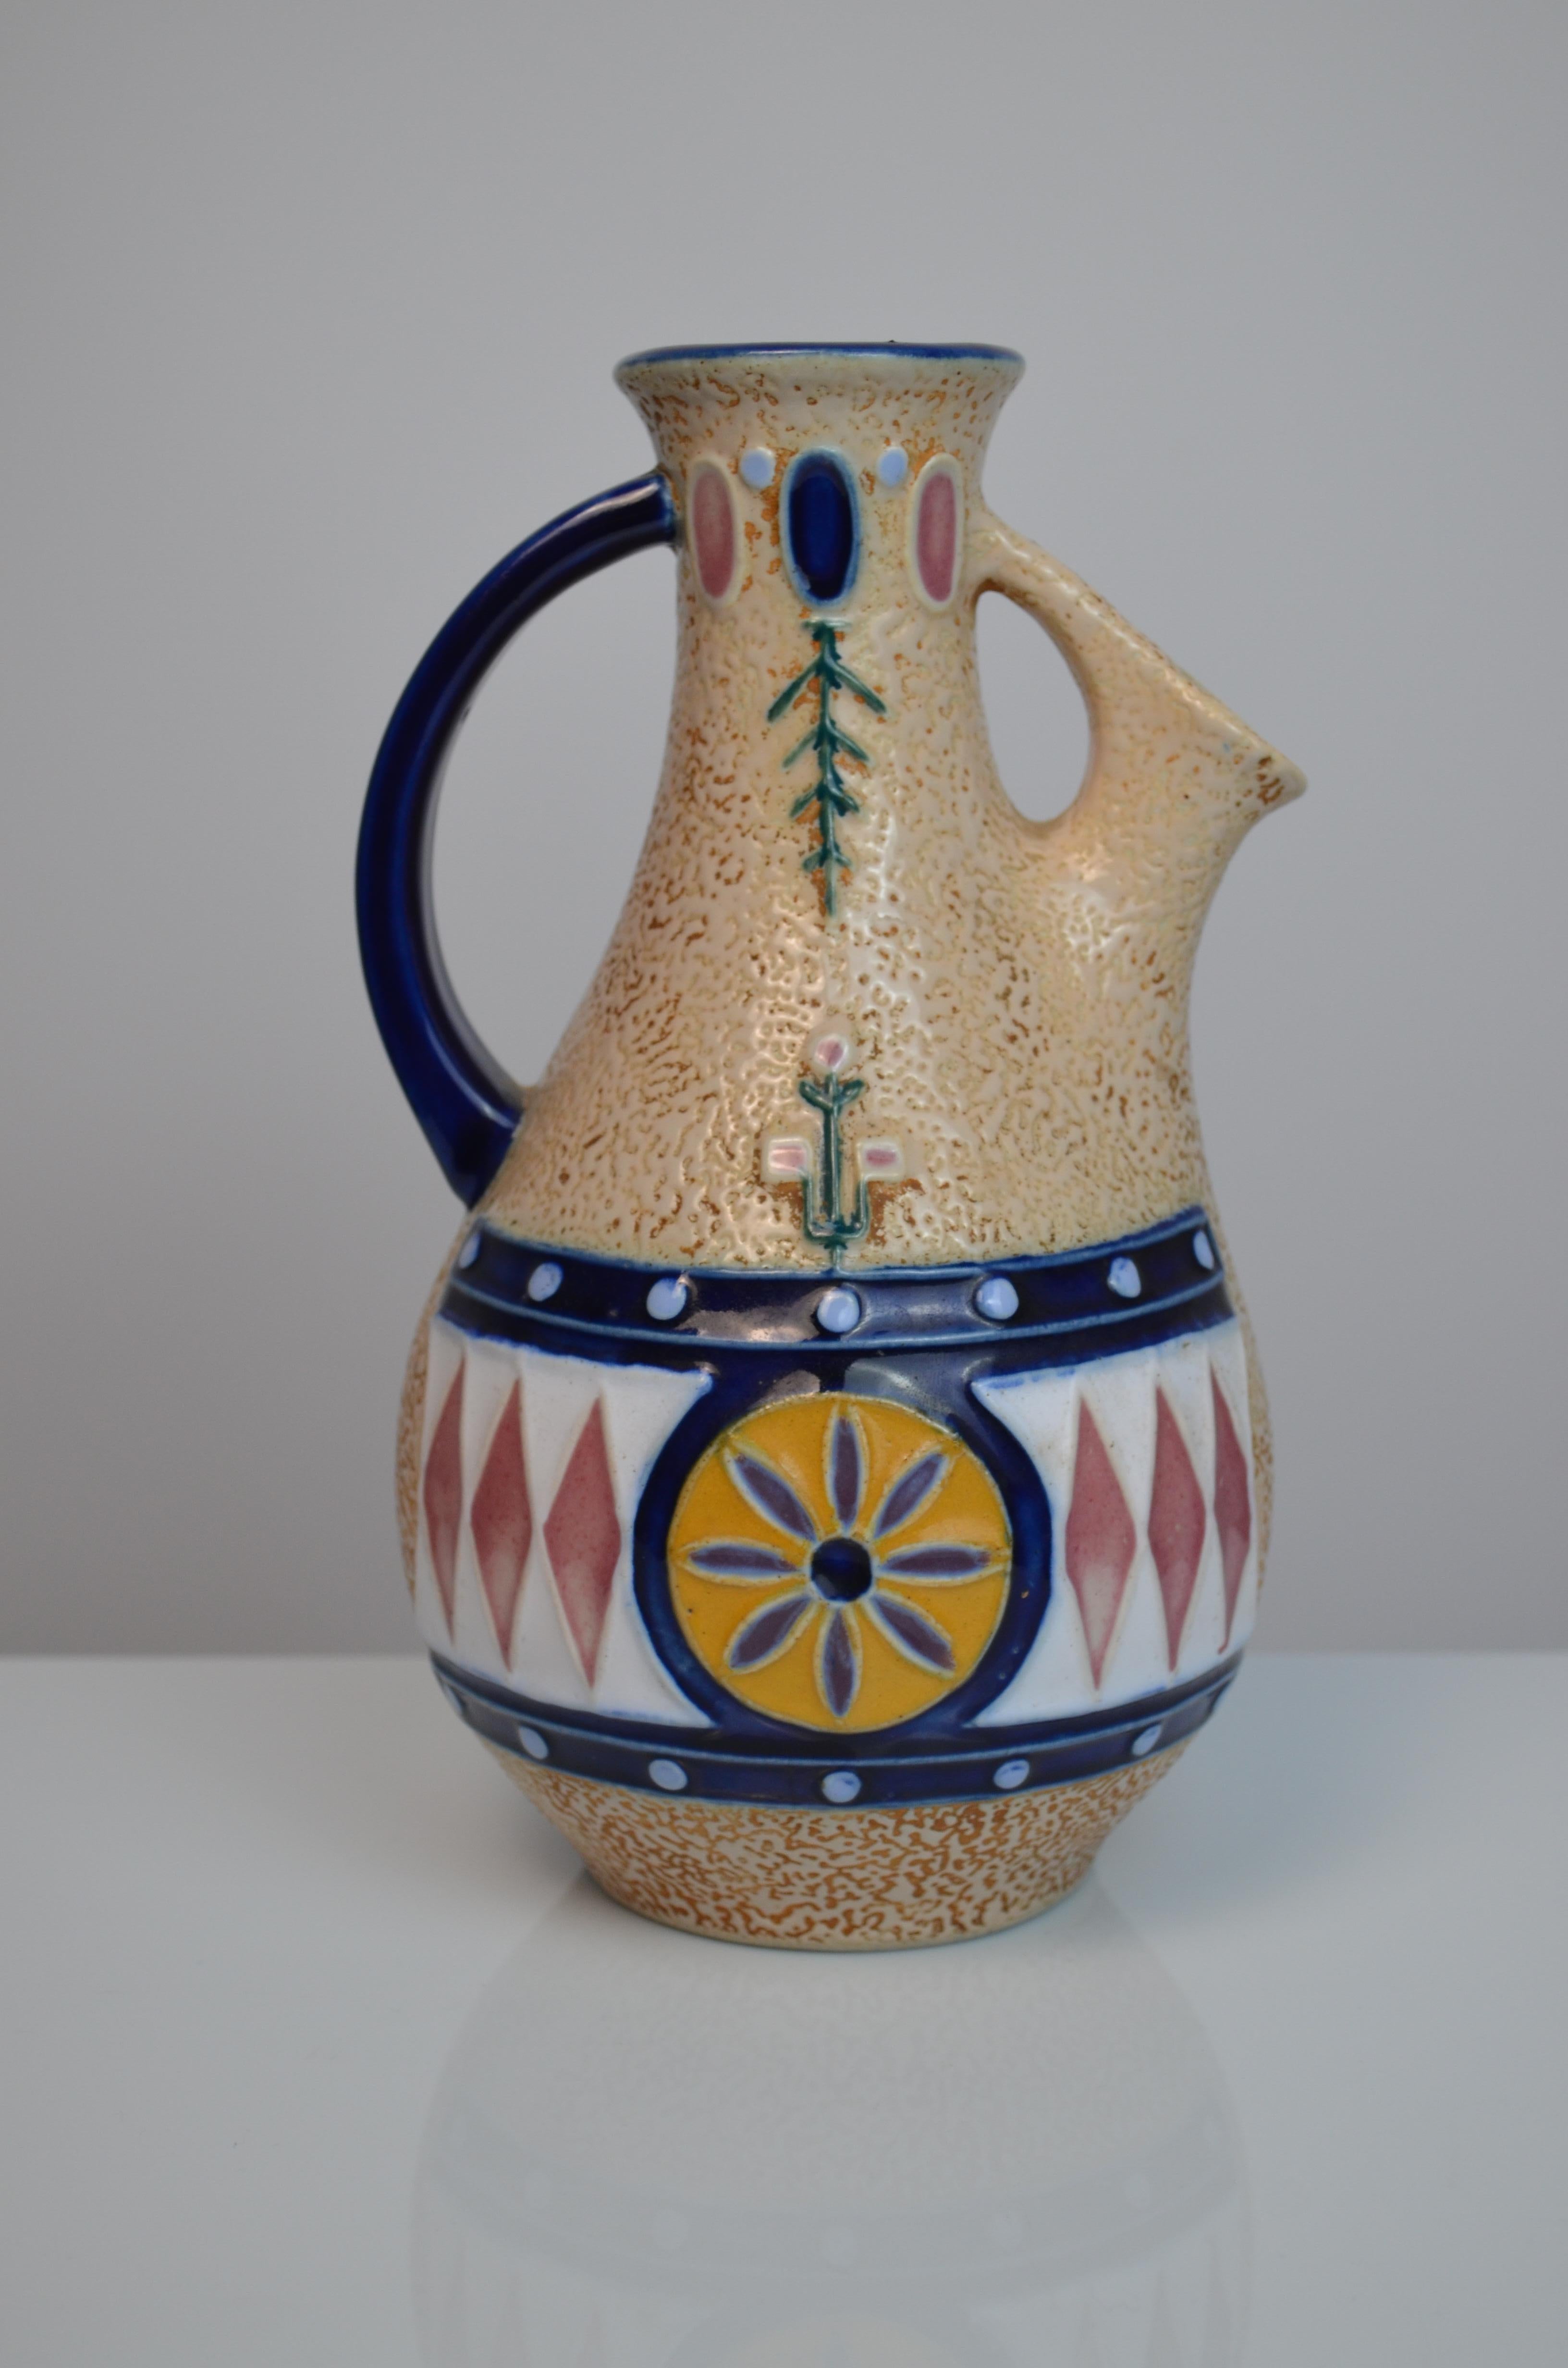 Tschechoslowakischer glasierter Keramikkrug des Herstellers Amphora, 1920er-1930er Jahre
Art-Déco-Stil.
Erstaunlicher Zustand und Design im Verhältnis zu seinem Alter.
Unter dem Sockel signiert.